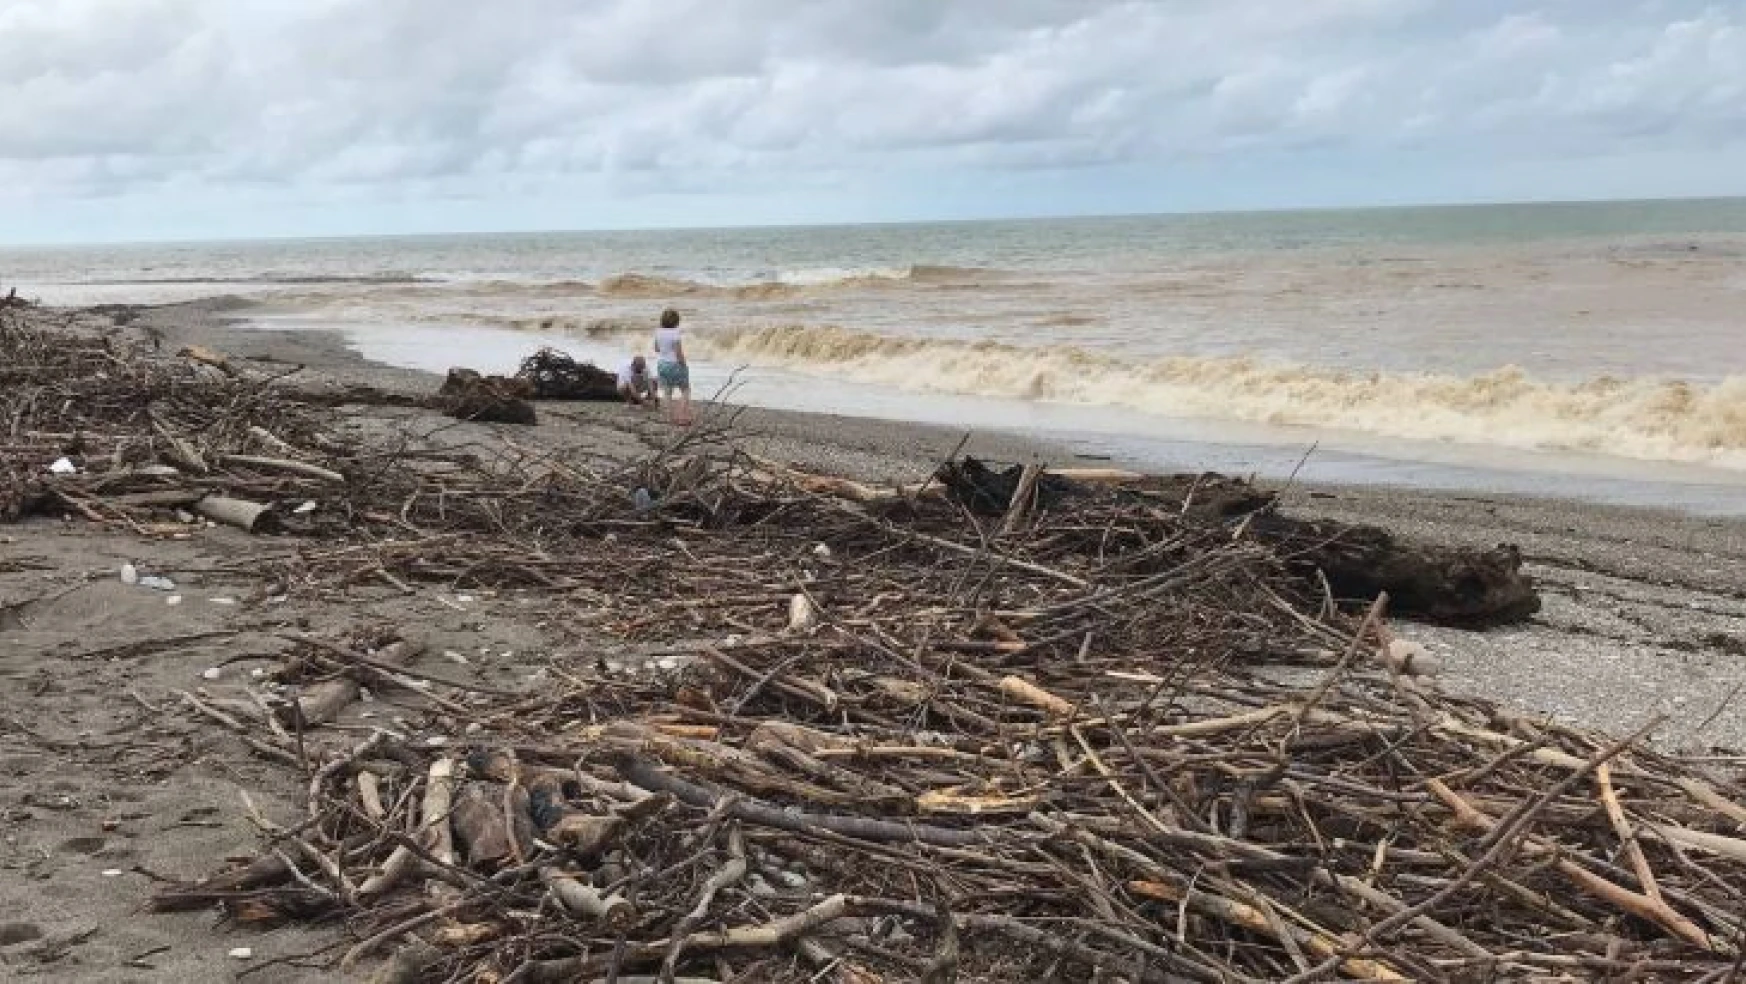 Aşırı yağışlarla gelen ağaç ve çöpler Akçakoca'da sahile vurdu